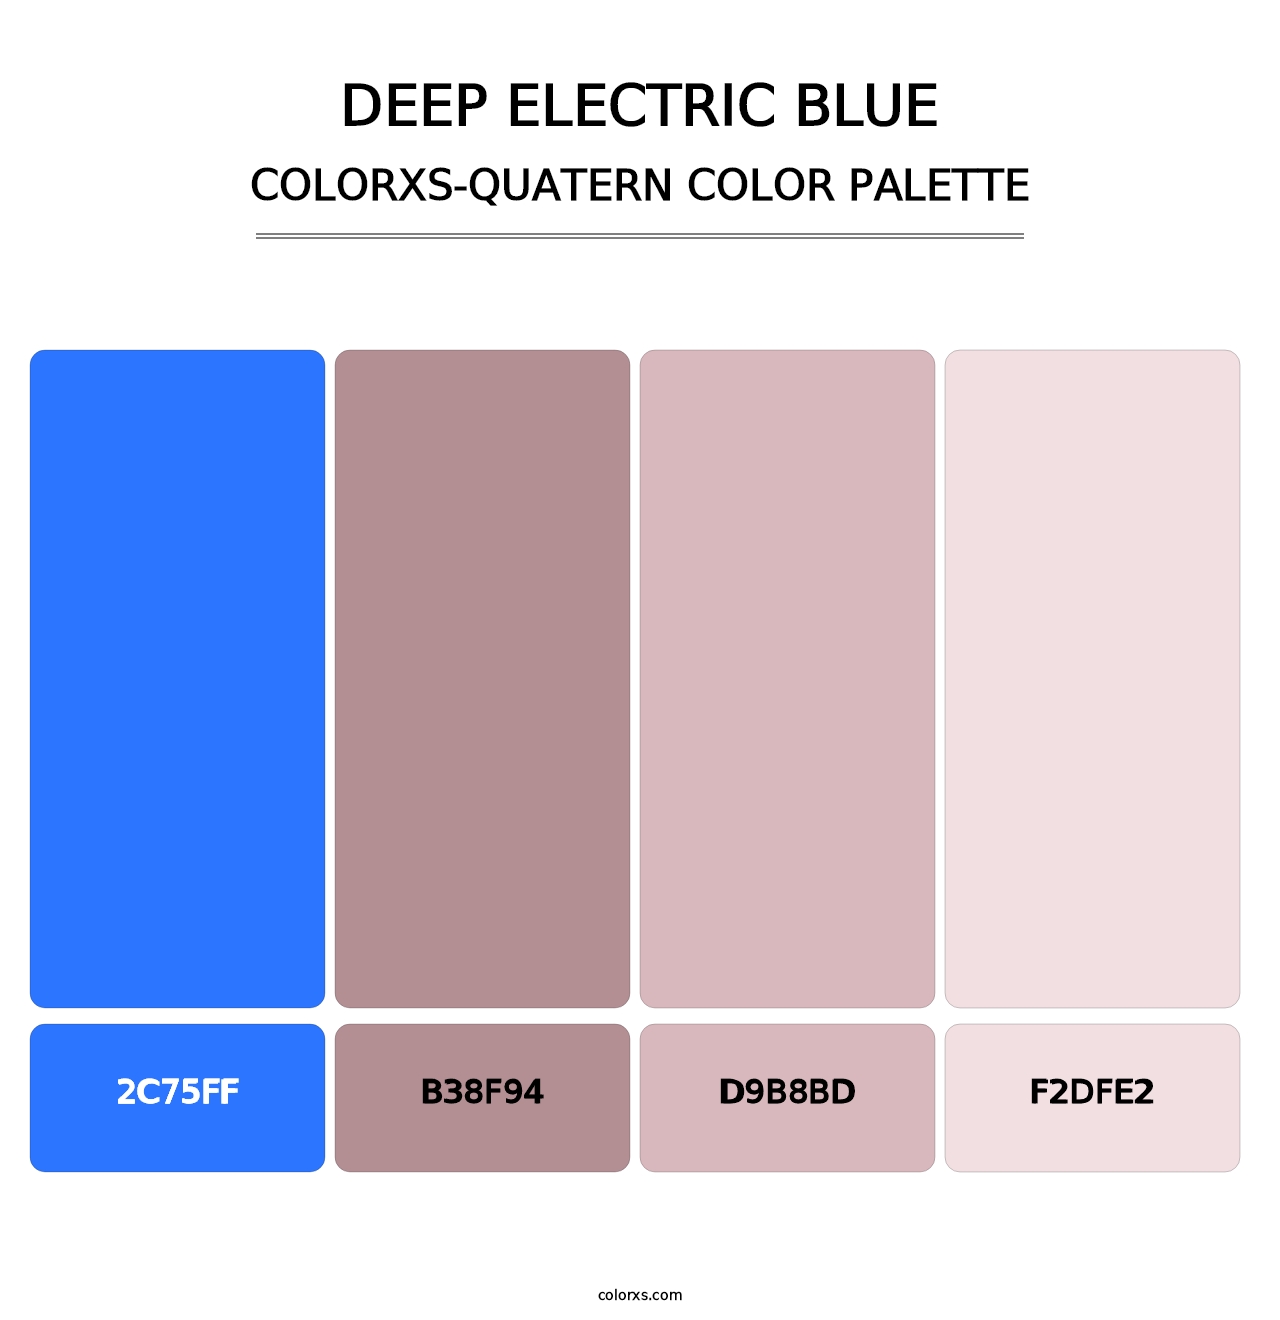 Deep Electric Blue - Colorxs Quatern Palette